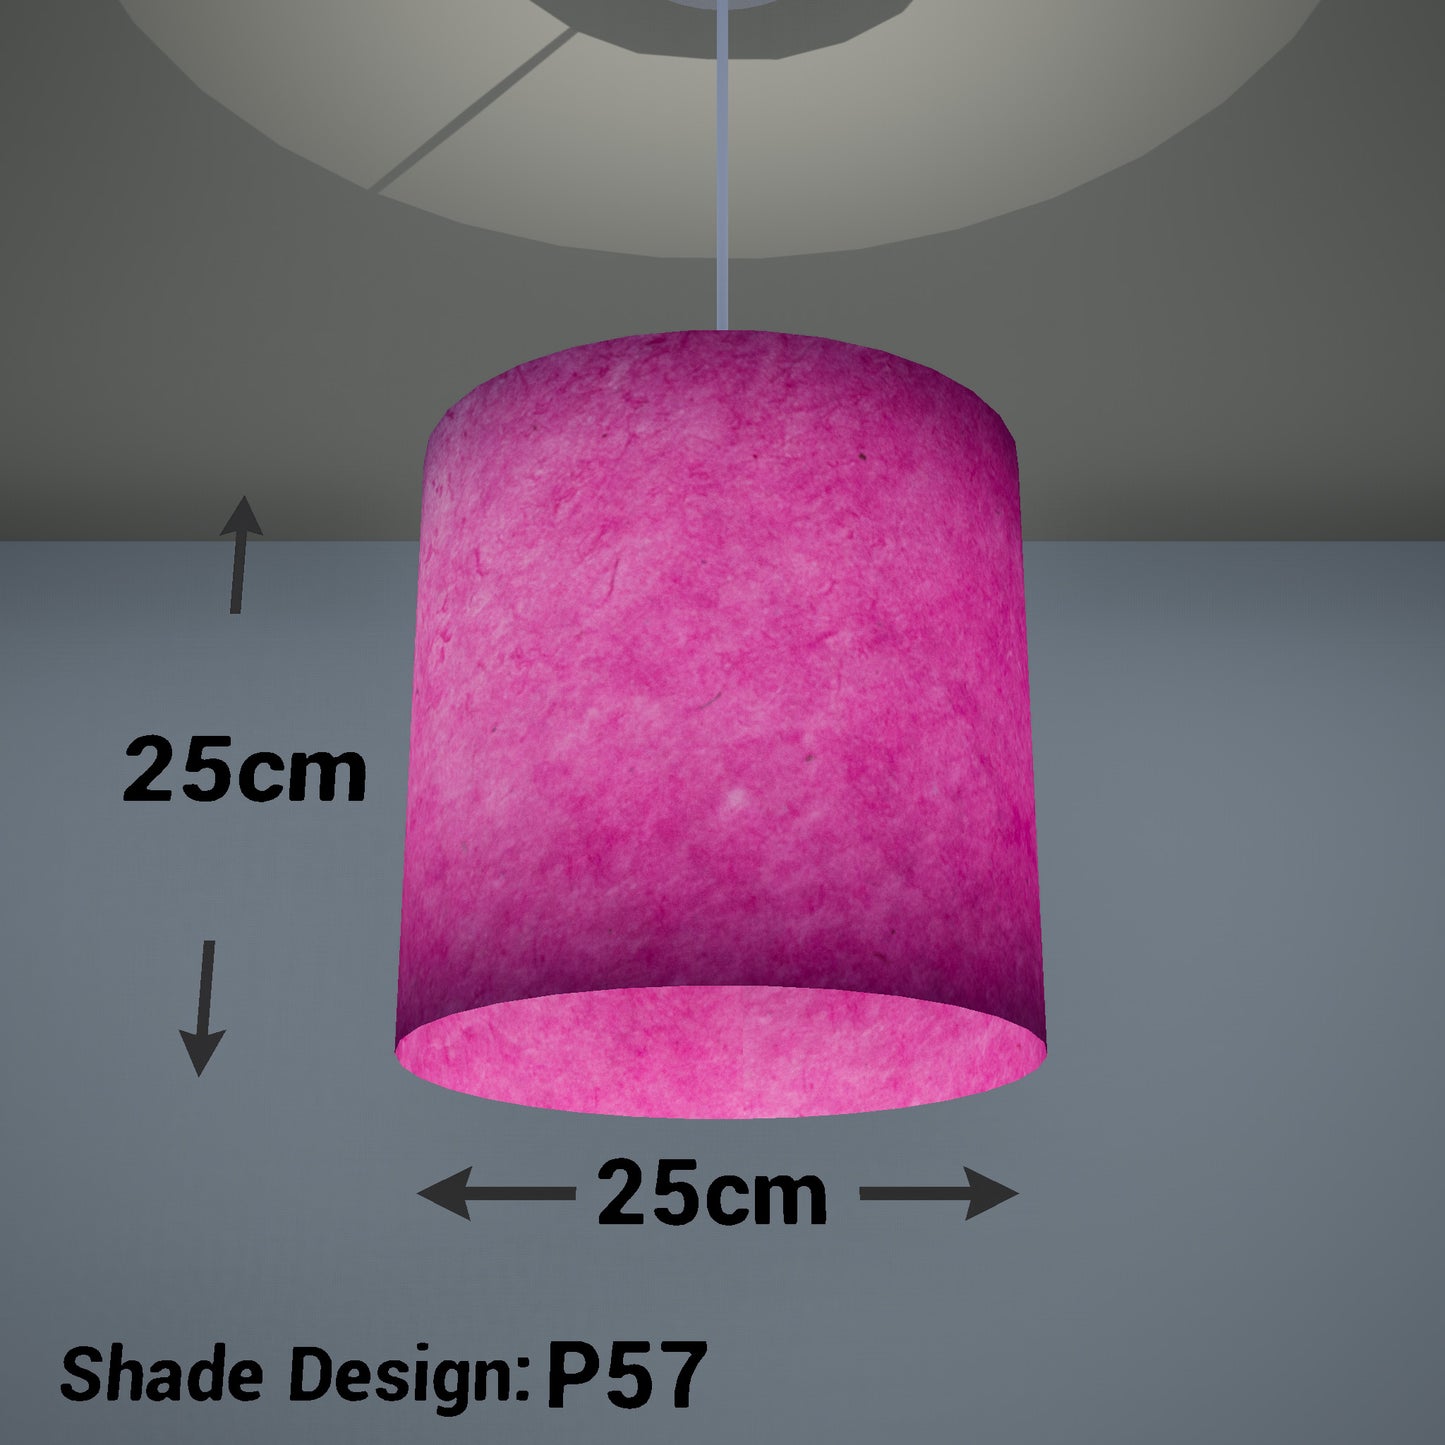 Drum Lamp Shade - P57 - Hot Pink Lokta, 25cm x 25cm